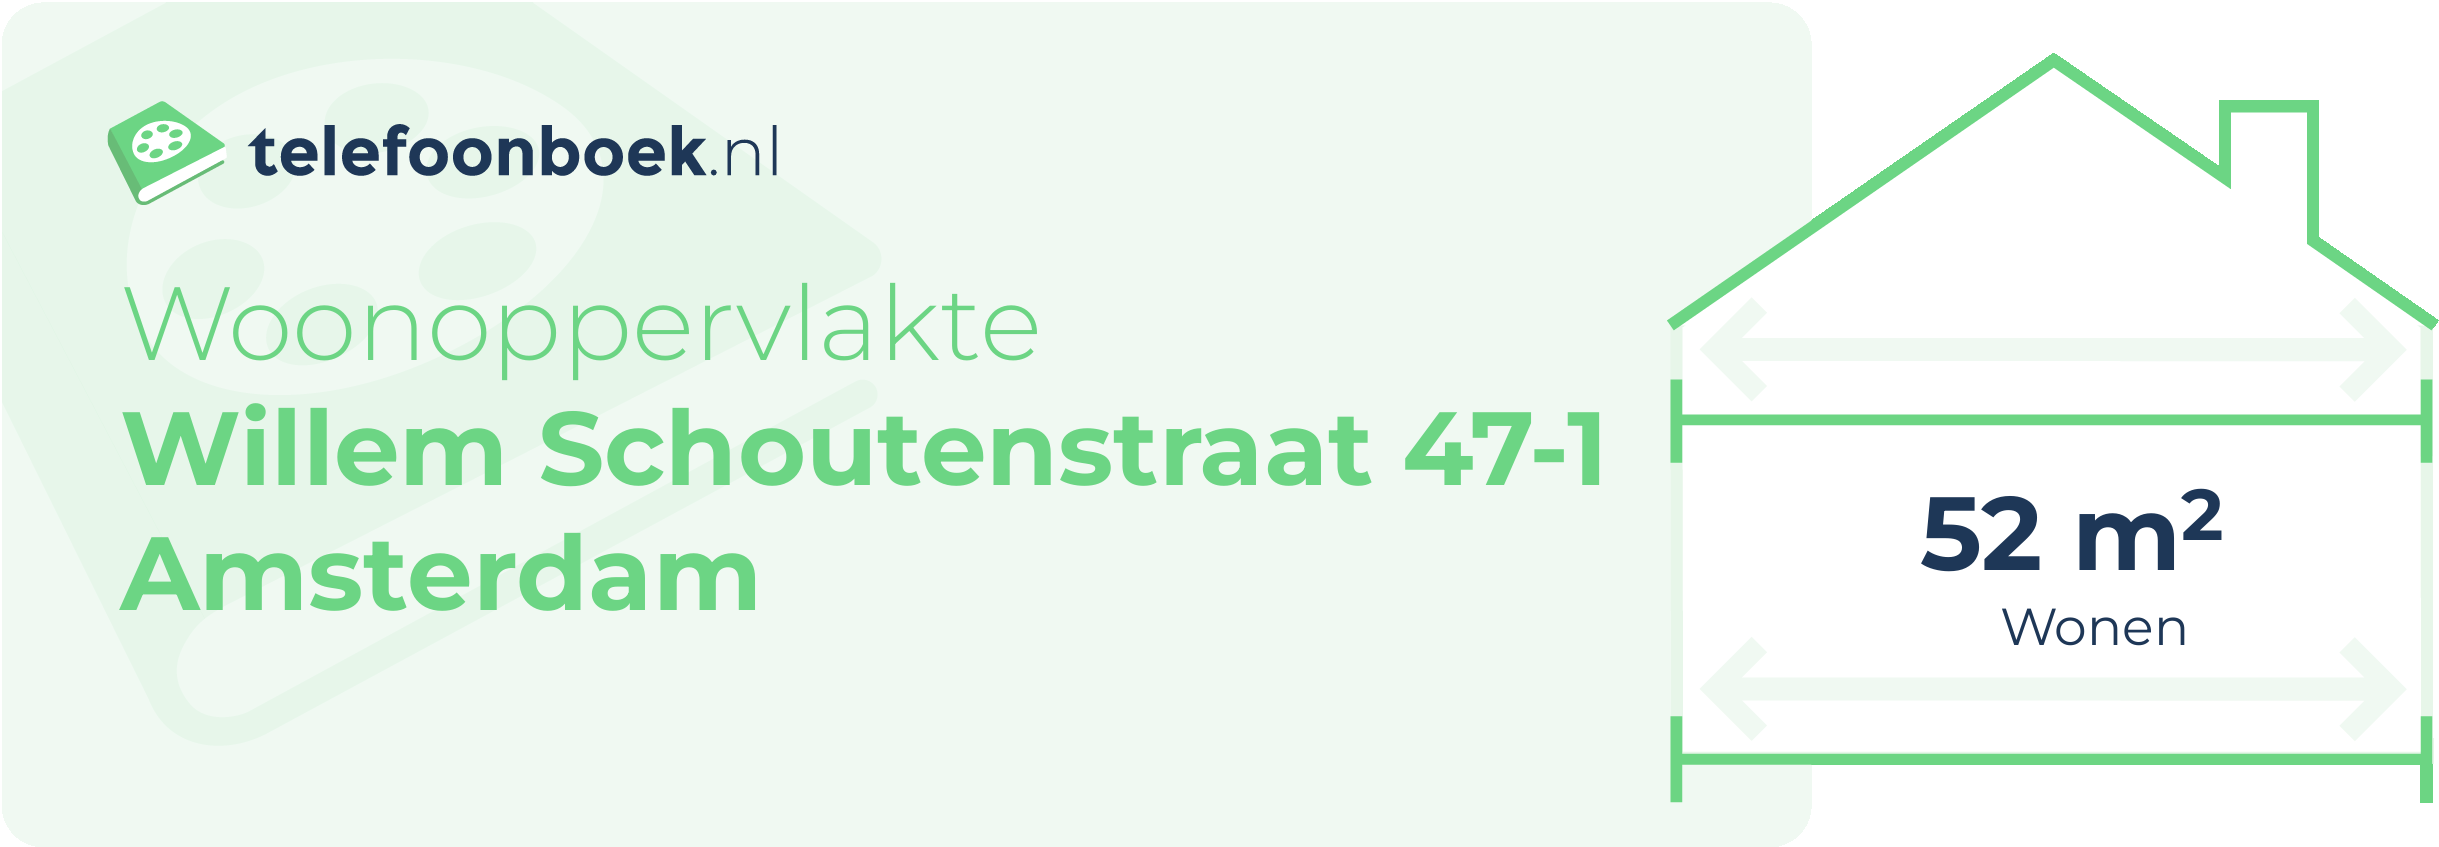 Woonoppervlakte Willem Schoutenstraat 47-1 Amsterdam